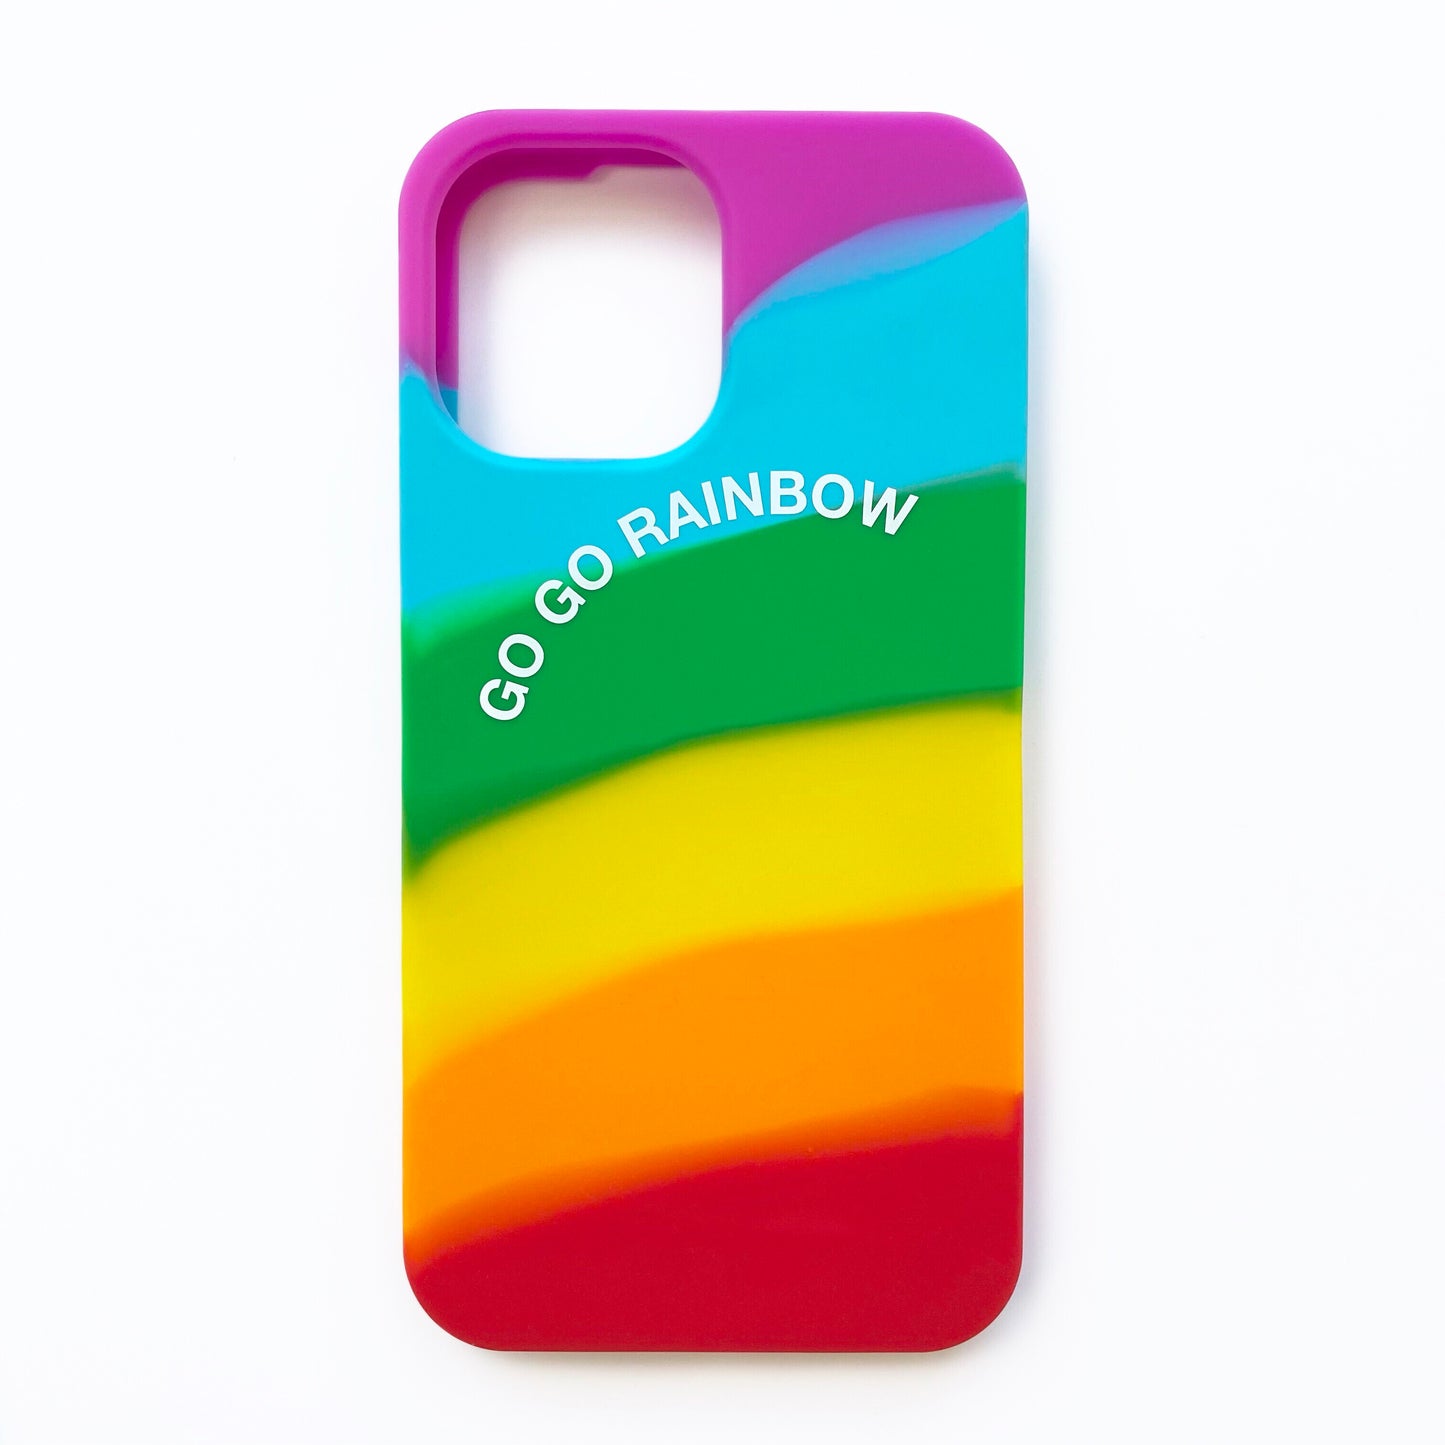 iPhone 12 Pro Max Simple Case - Go Go Rainbow